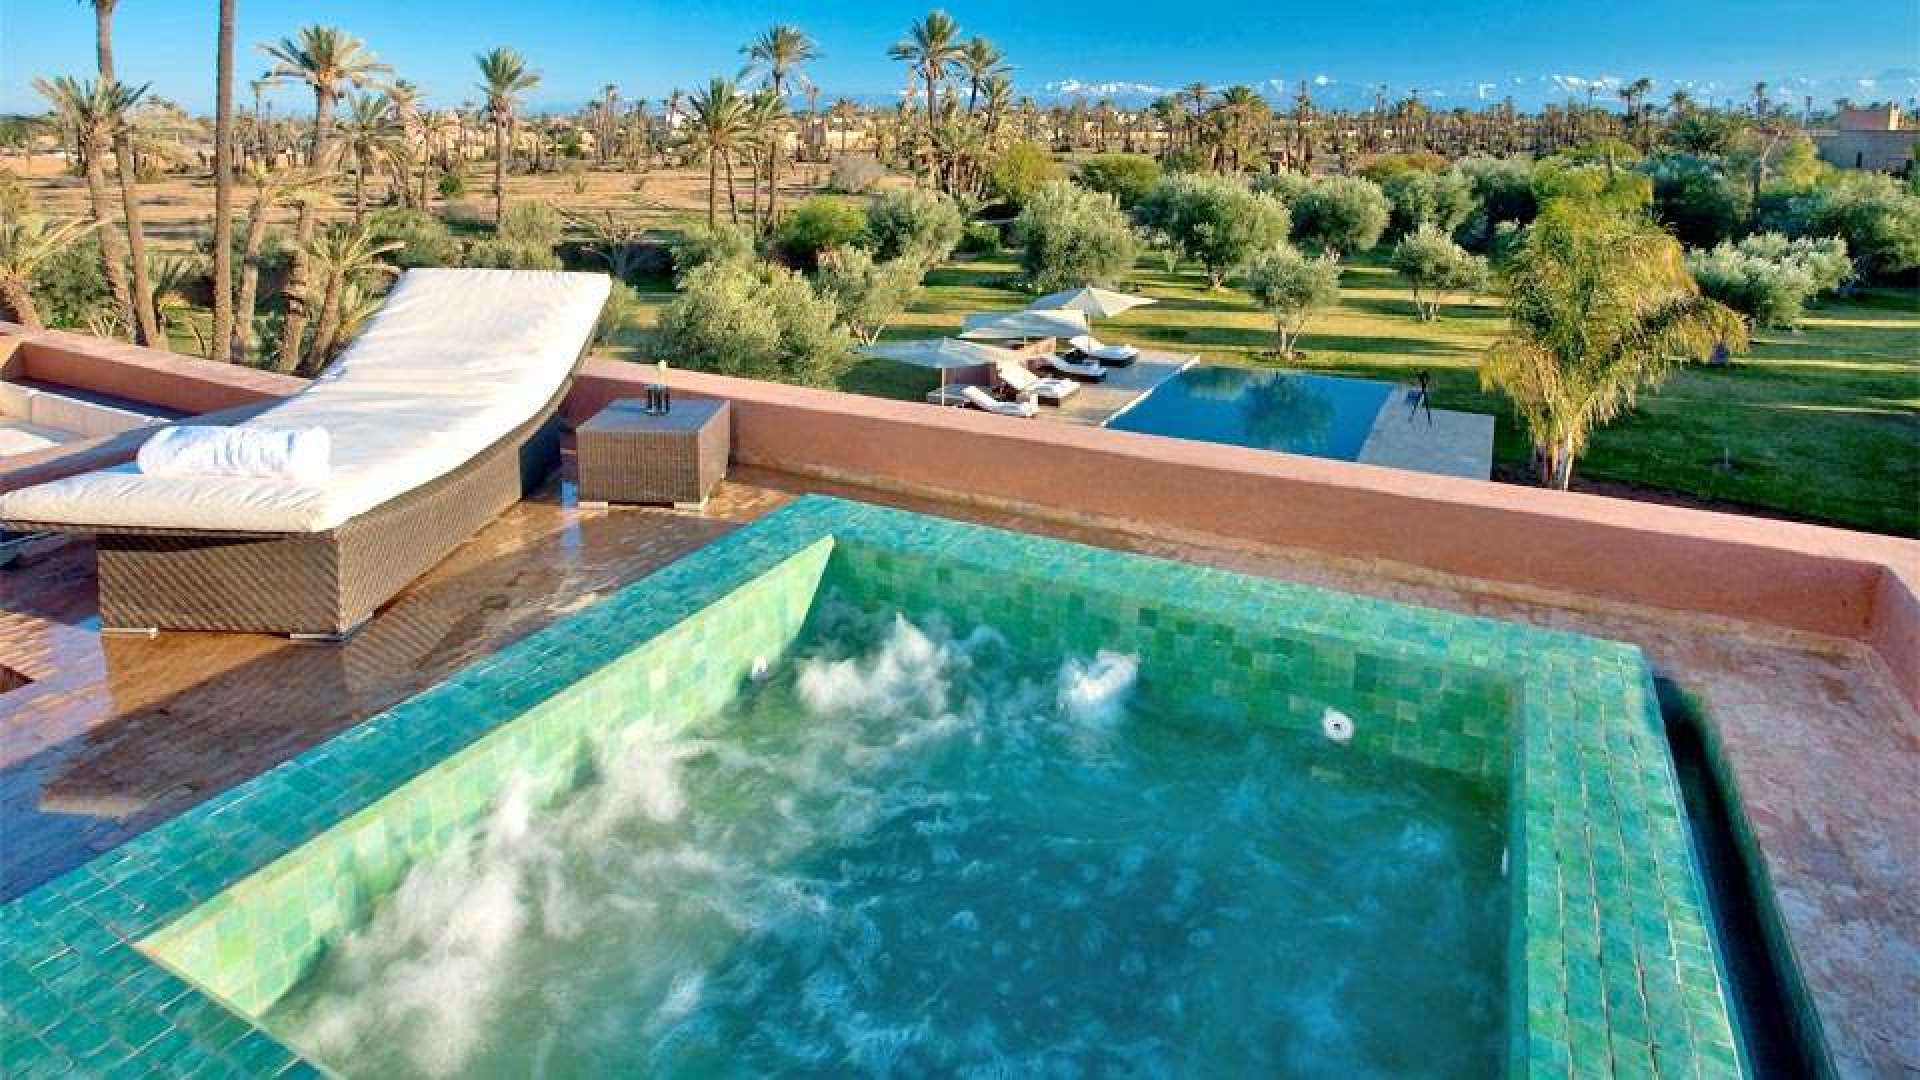 Location de vacances,Villa,VILLA DE STYLE CONTEMPORAIN SUR UN BEAU PARC ARBORÉ À LA PALMERAIE,Marrakech,Palmeraie